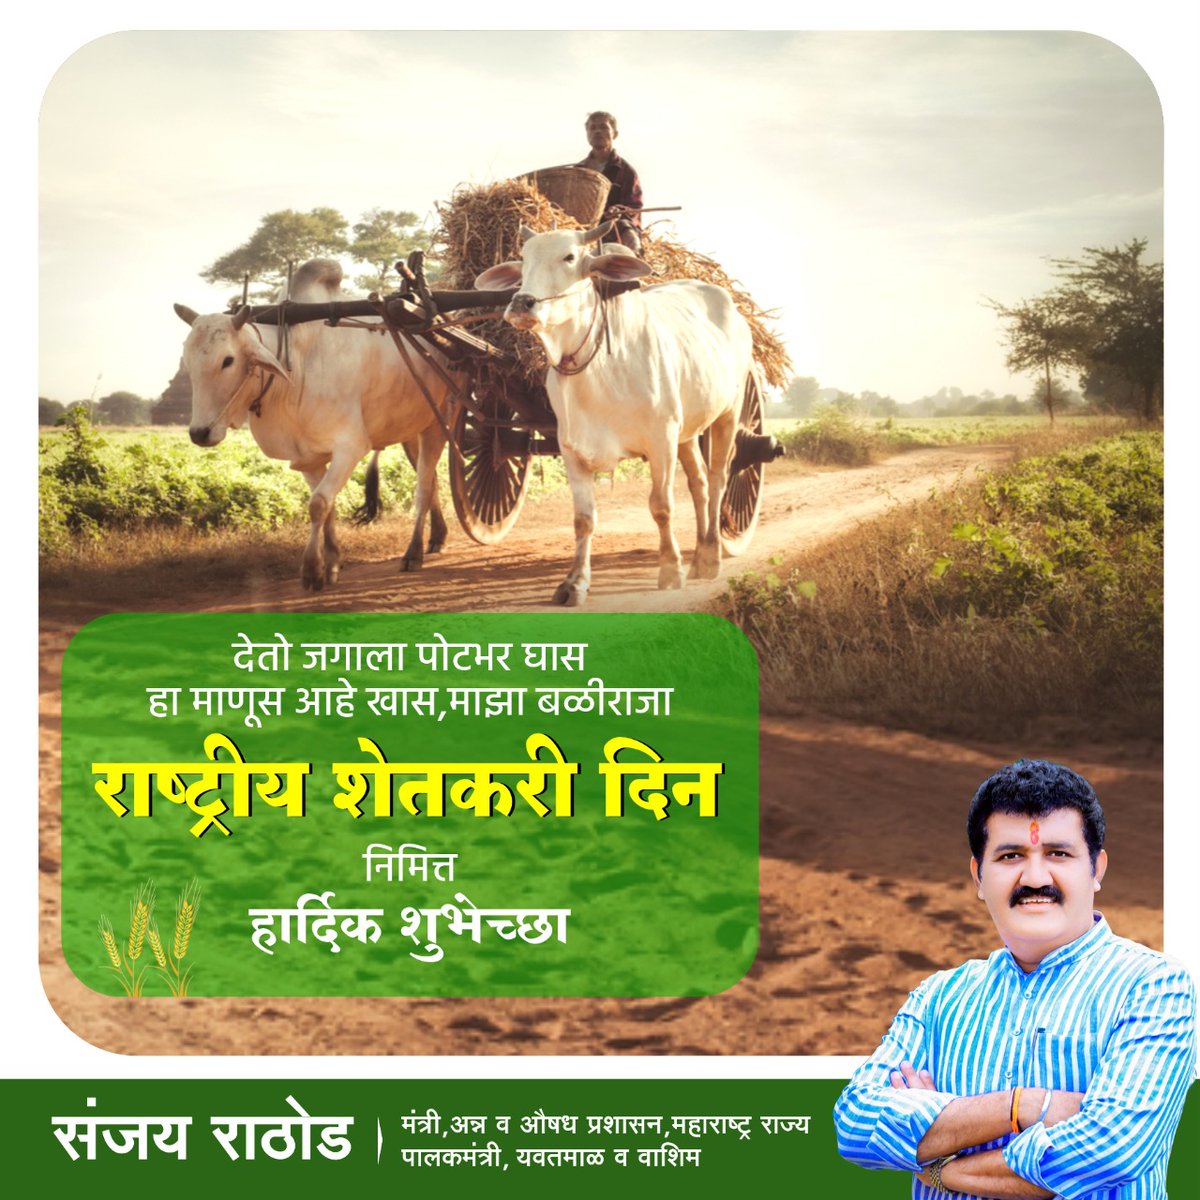 शेतकरी आपला अन्नदाता,
देशाचा आहे तो भाग्यविधाता.

सर्व शेतकरी बंधु - भगिनींना राष्ट्रीय शेतकरी दिनानिमित्त हार्दिक शुभेच्छा!

#NationalFarmerDay